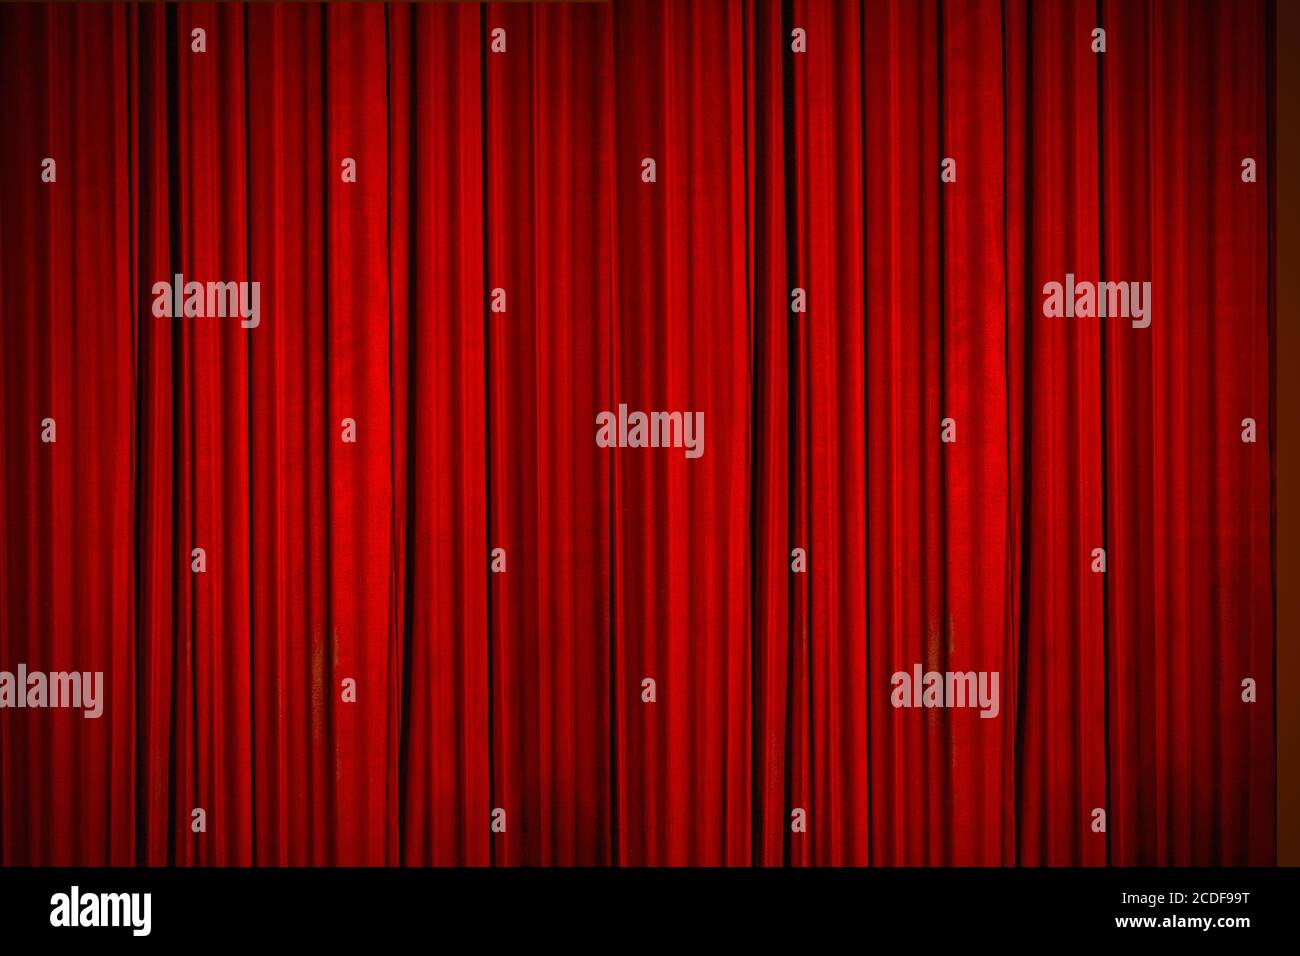 Schöne rote Vorhänge der Bühne beleuchtet mit Bühnenbeleuchtung, Momente bevor die Vorhänge ging bis, um die Bühne zu offenbaren Stockfoto